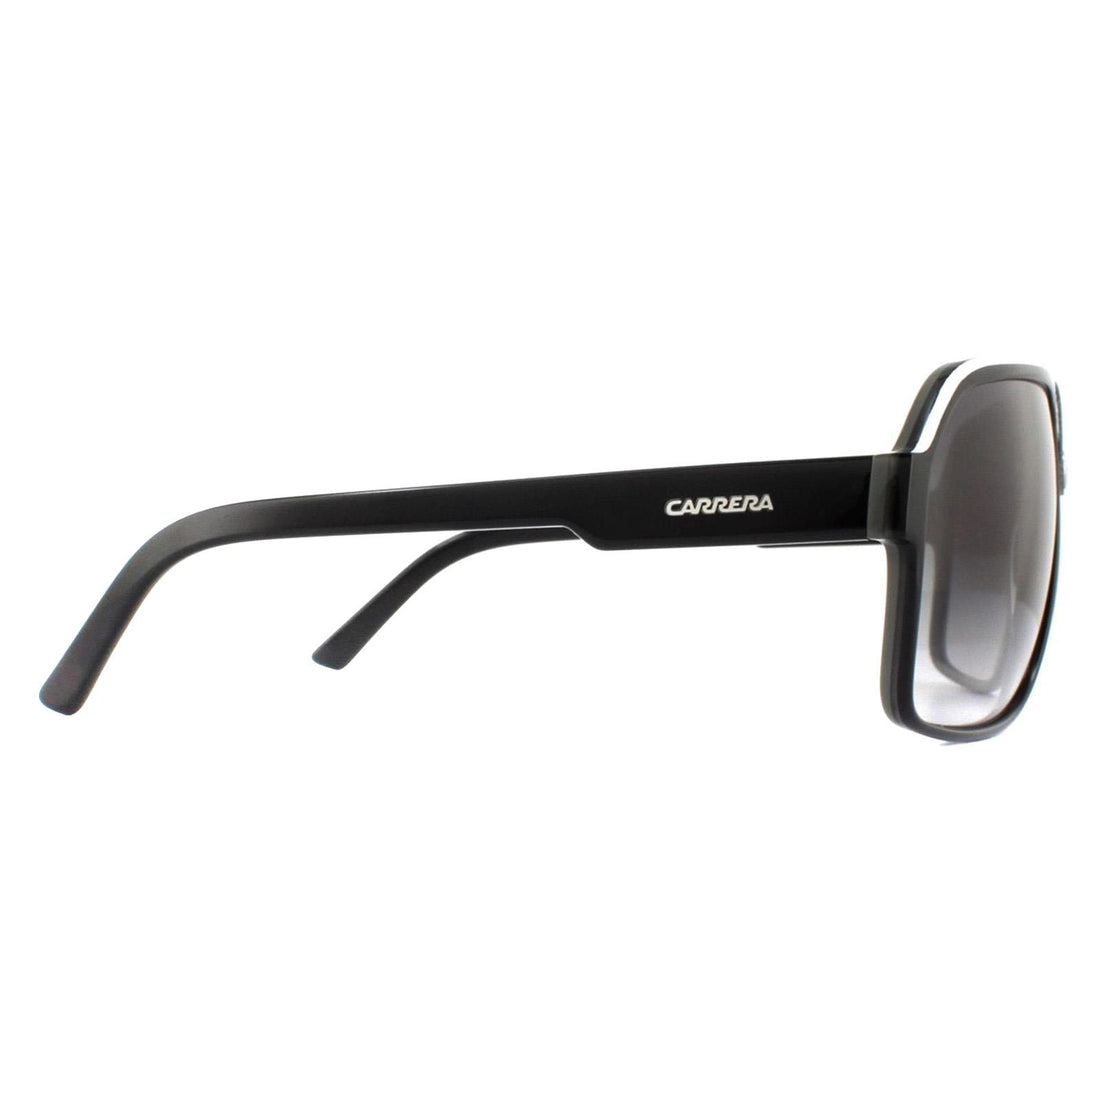 Carrera Sunglasses Carrera 33 8V6 9O Black and White Grey Gradient